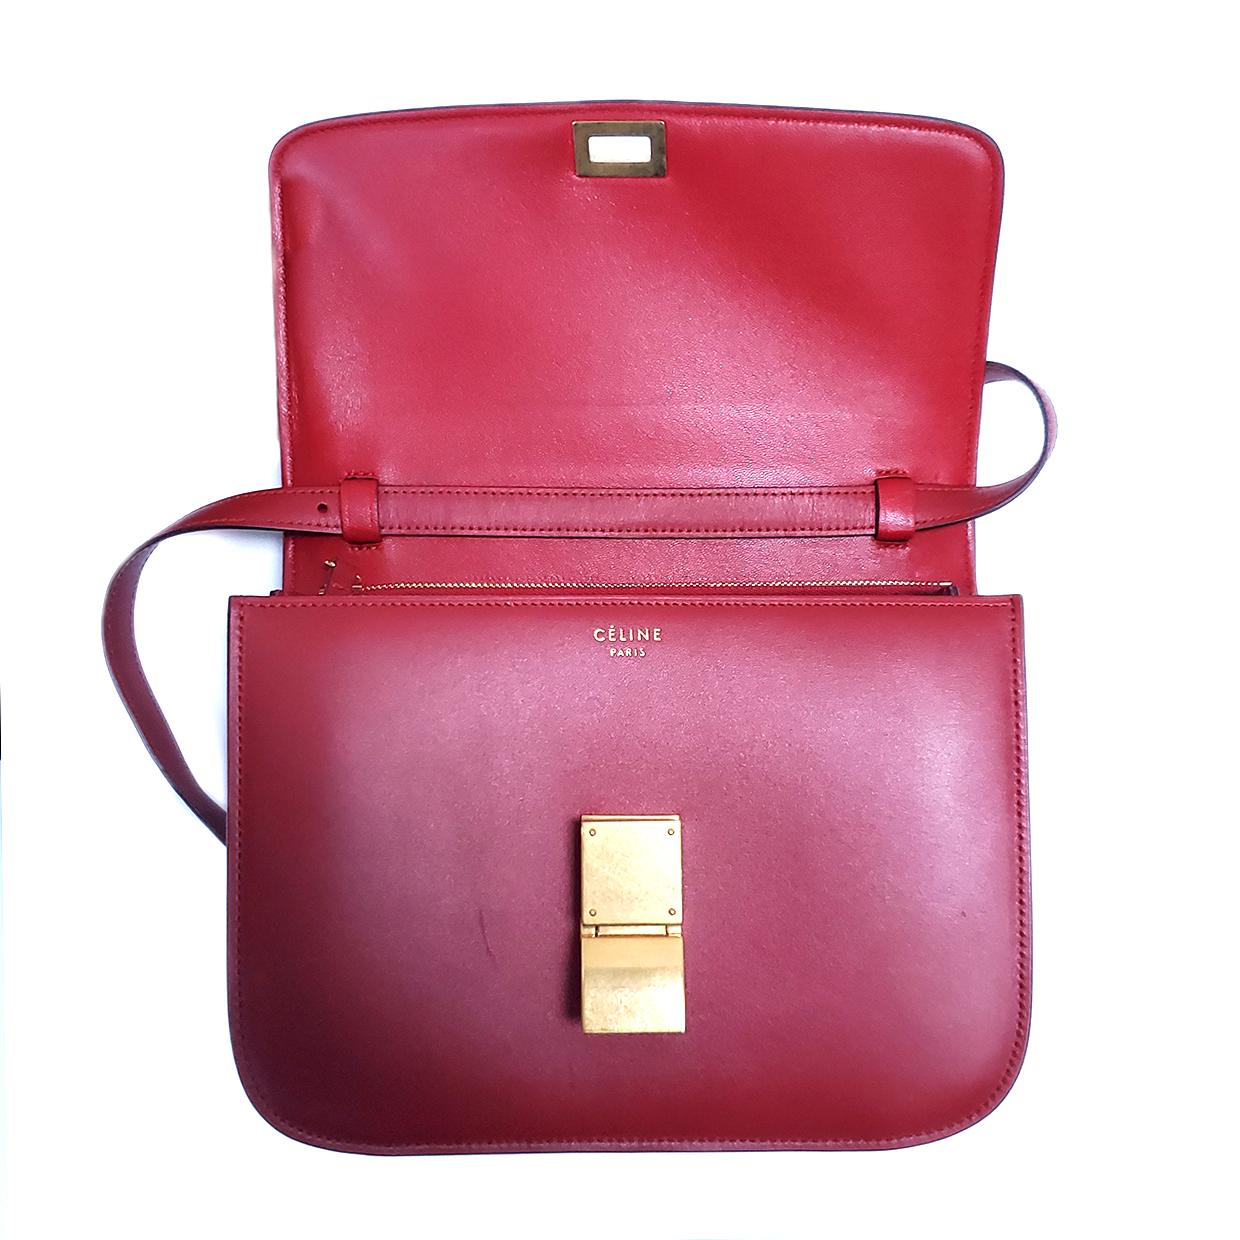 Celine Medium Classic Red Leather Shoulder Bag 1